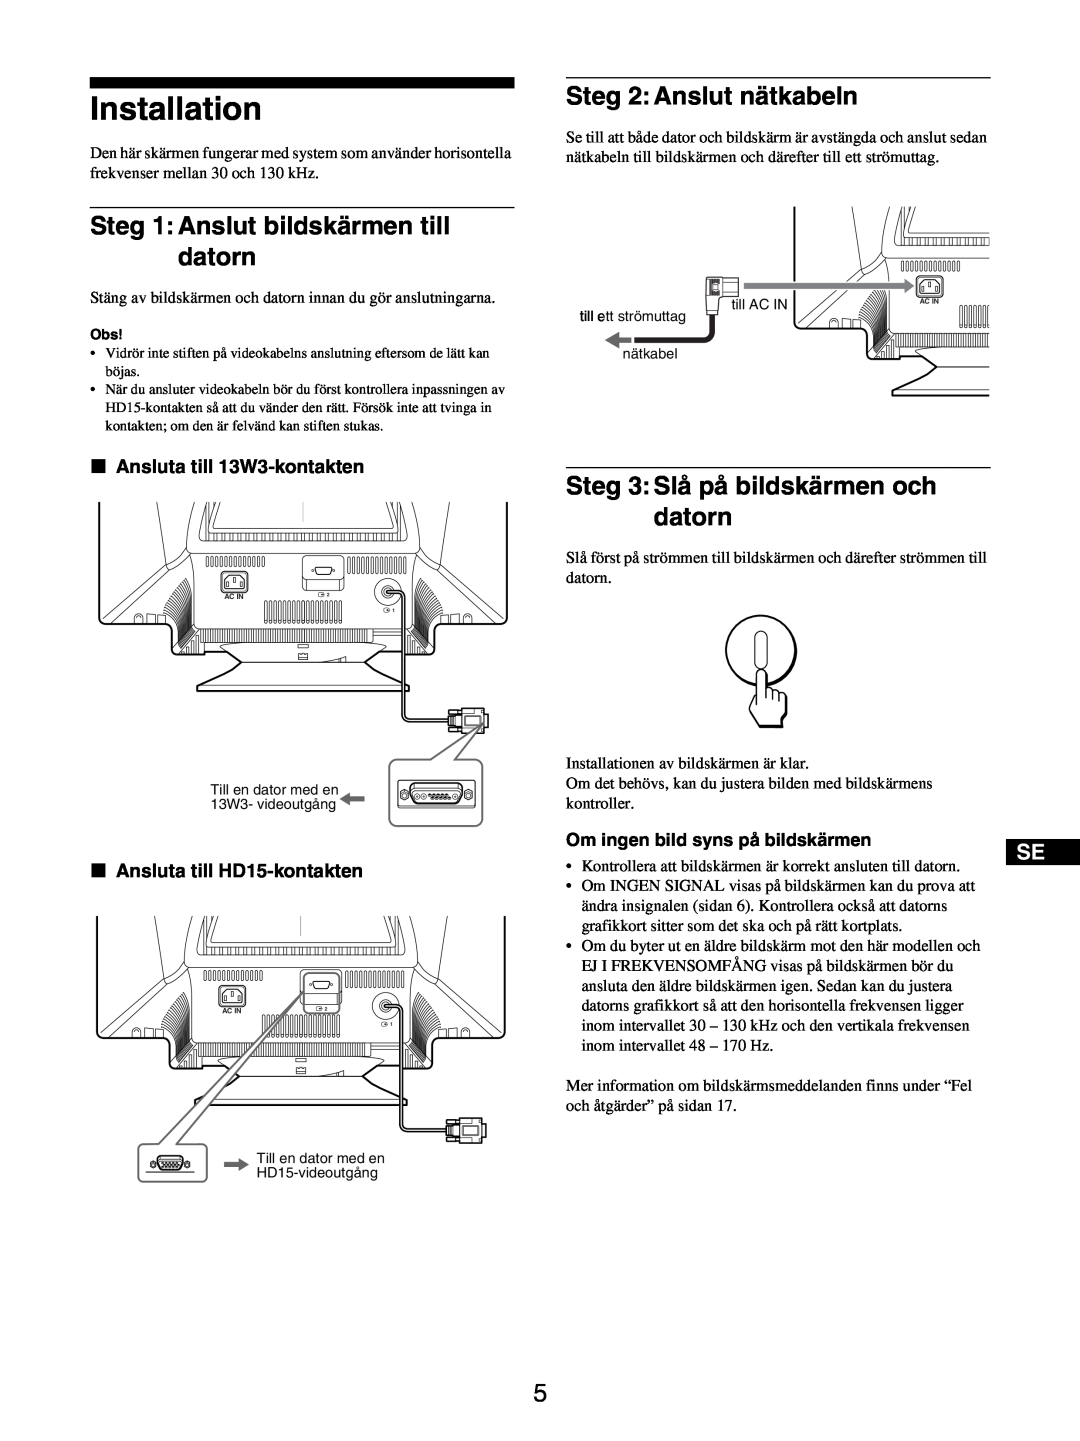 Sony GDM-5510 Installation, Steg 1 Anslut bildskärmen till datorn, Steg 2Anslut nätkabeln, x Ansluta till 13W3-kontakten 